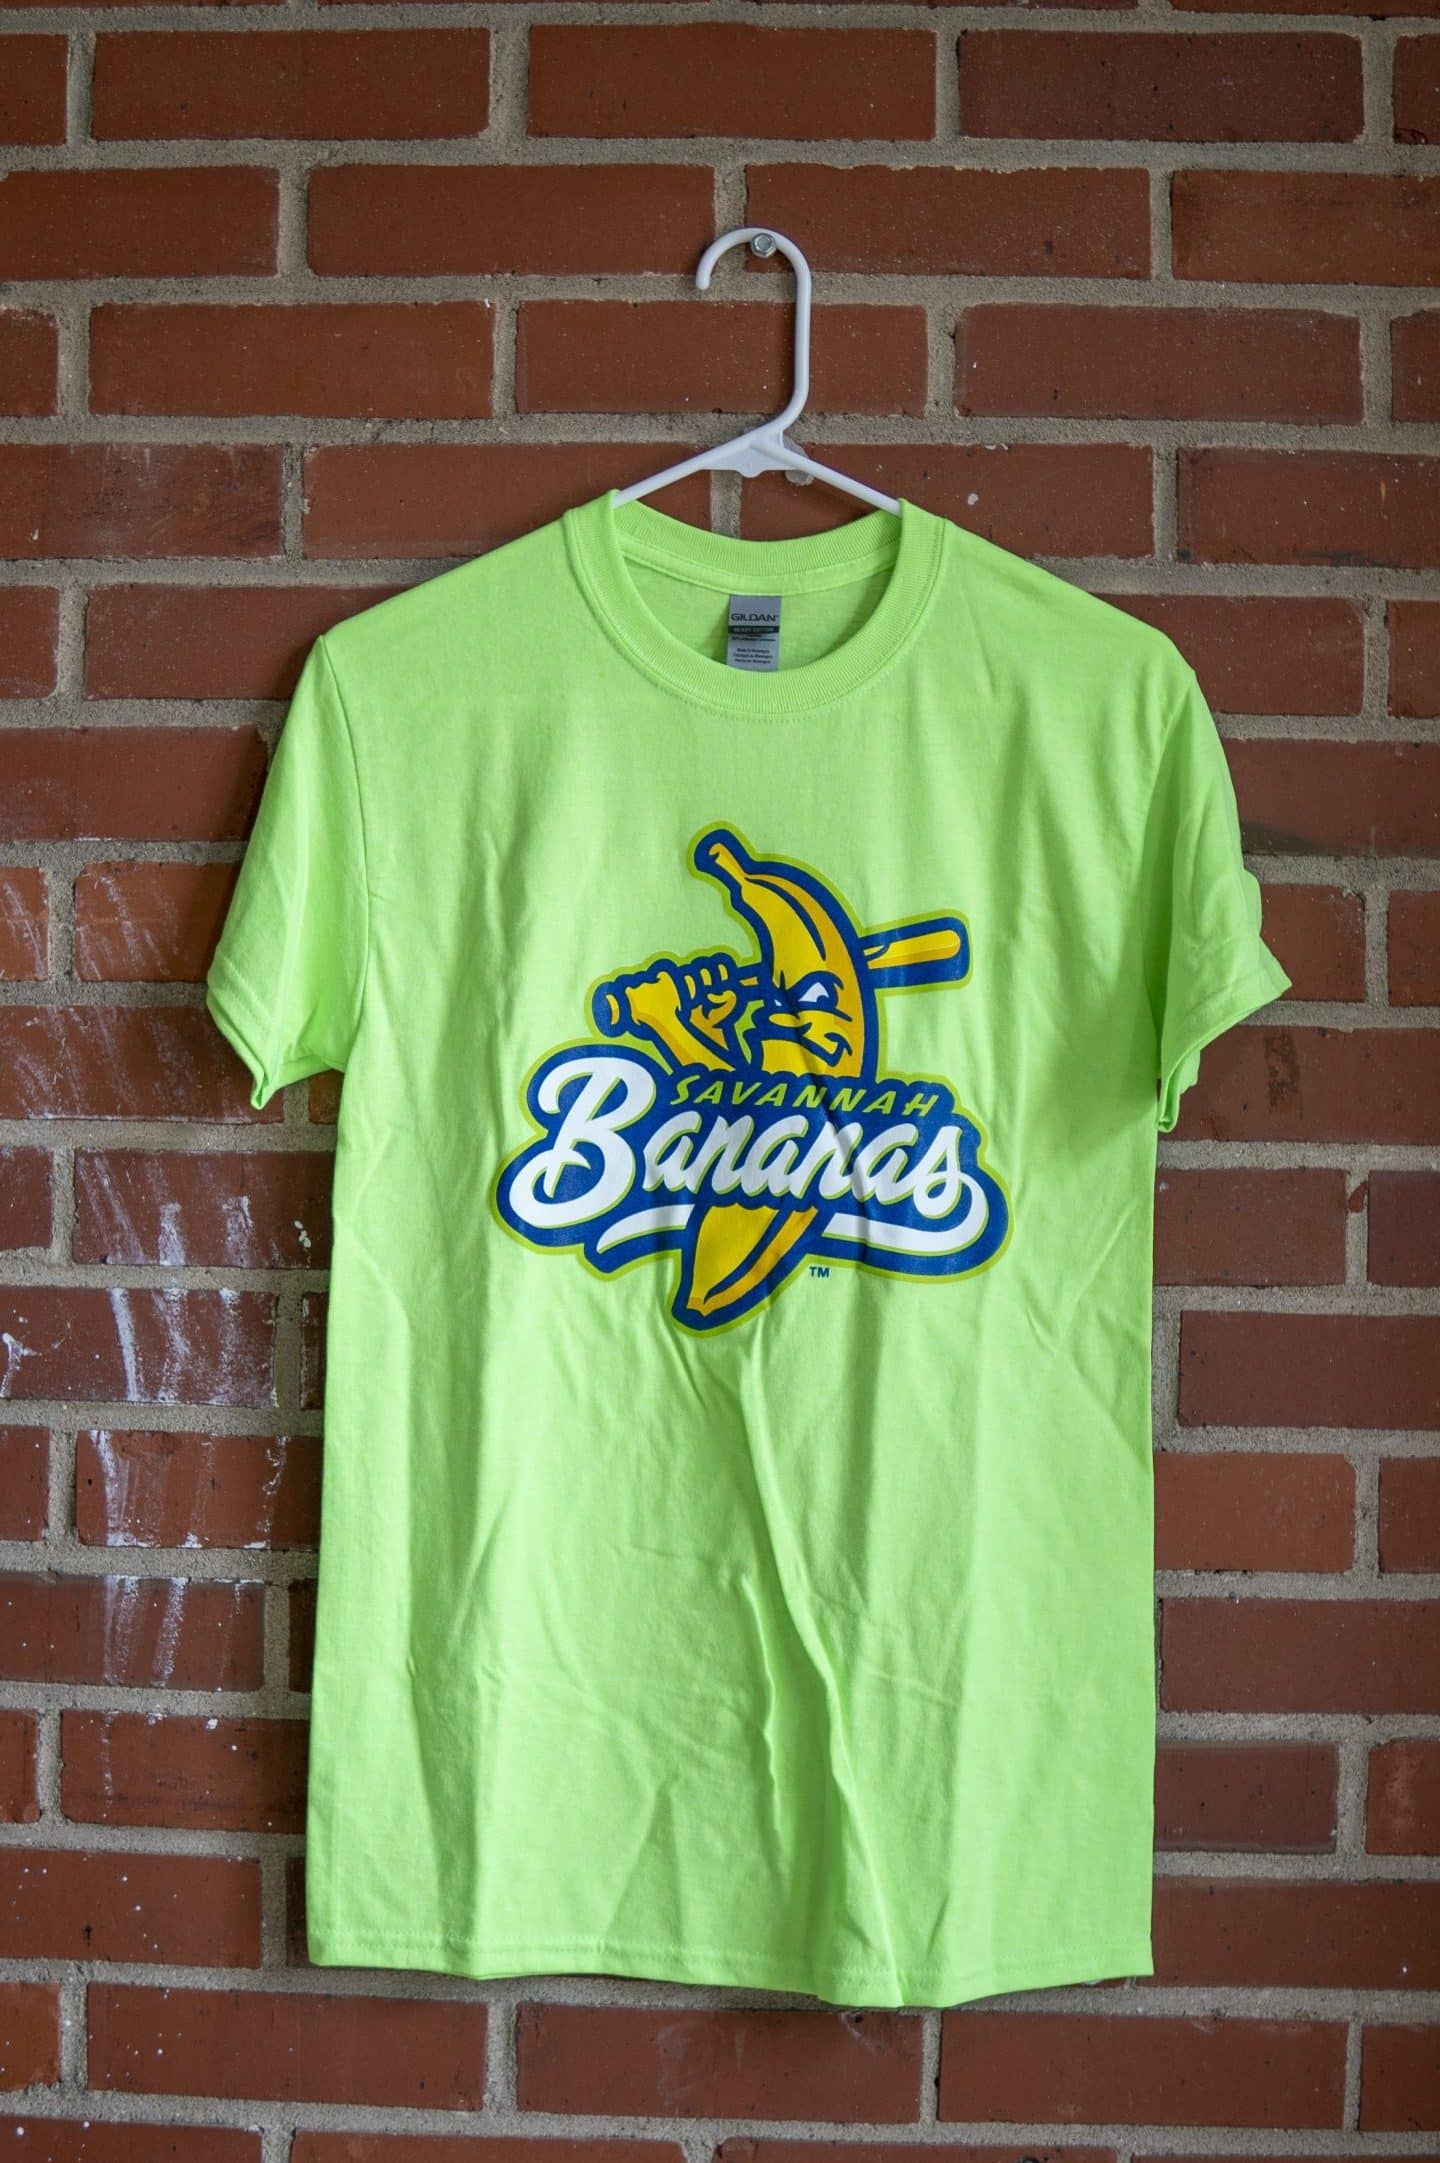 NEW Bananas Dri Fit T-shirt - The Savannah Bananas